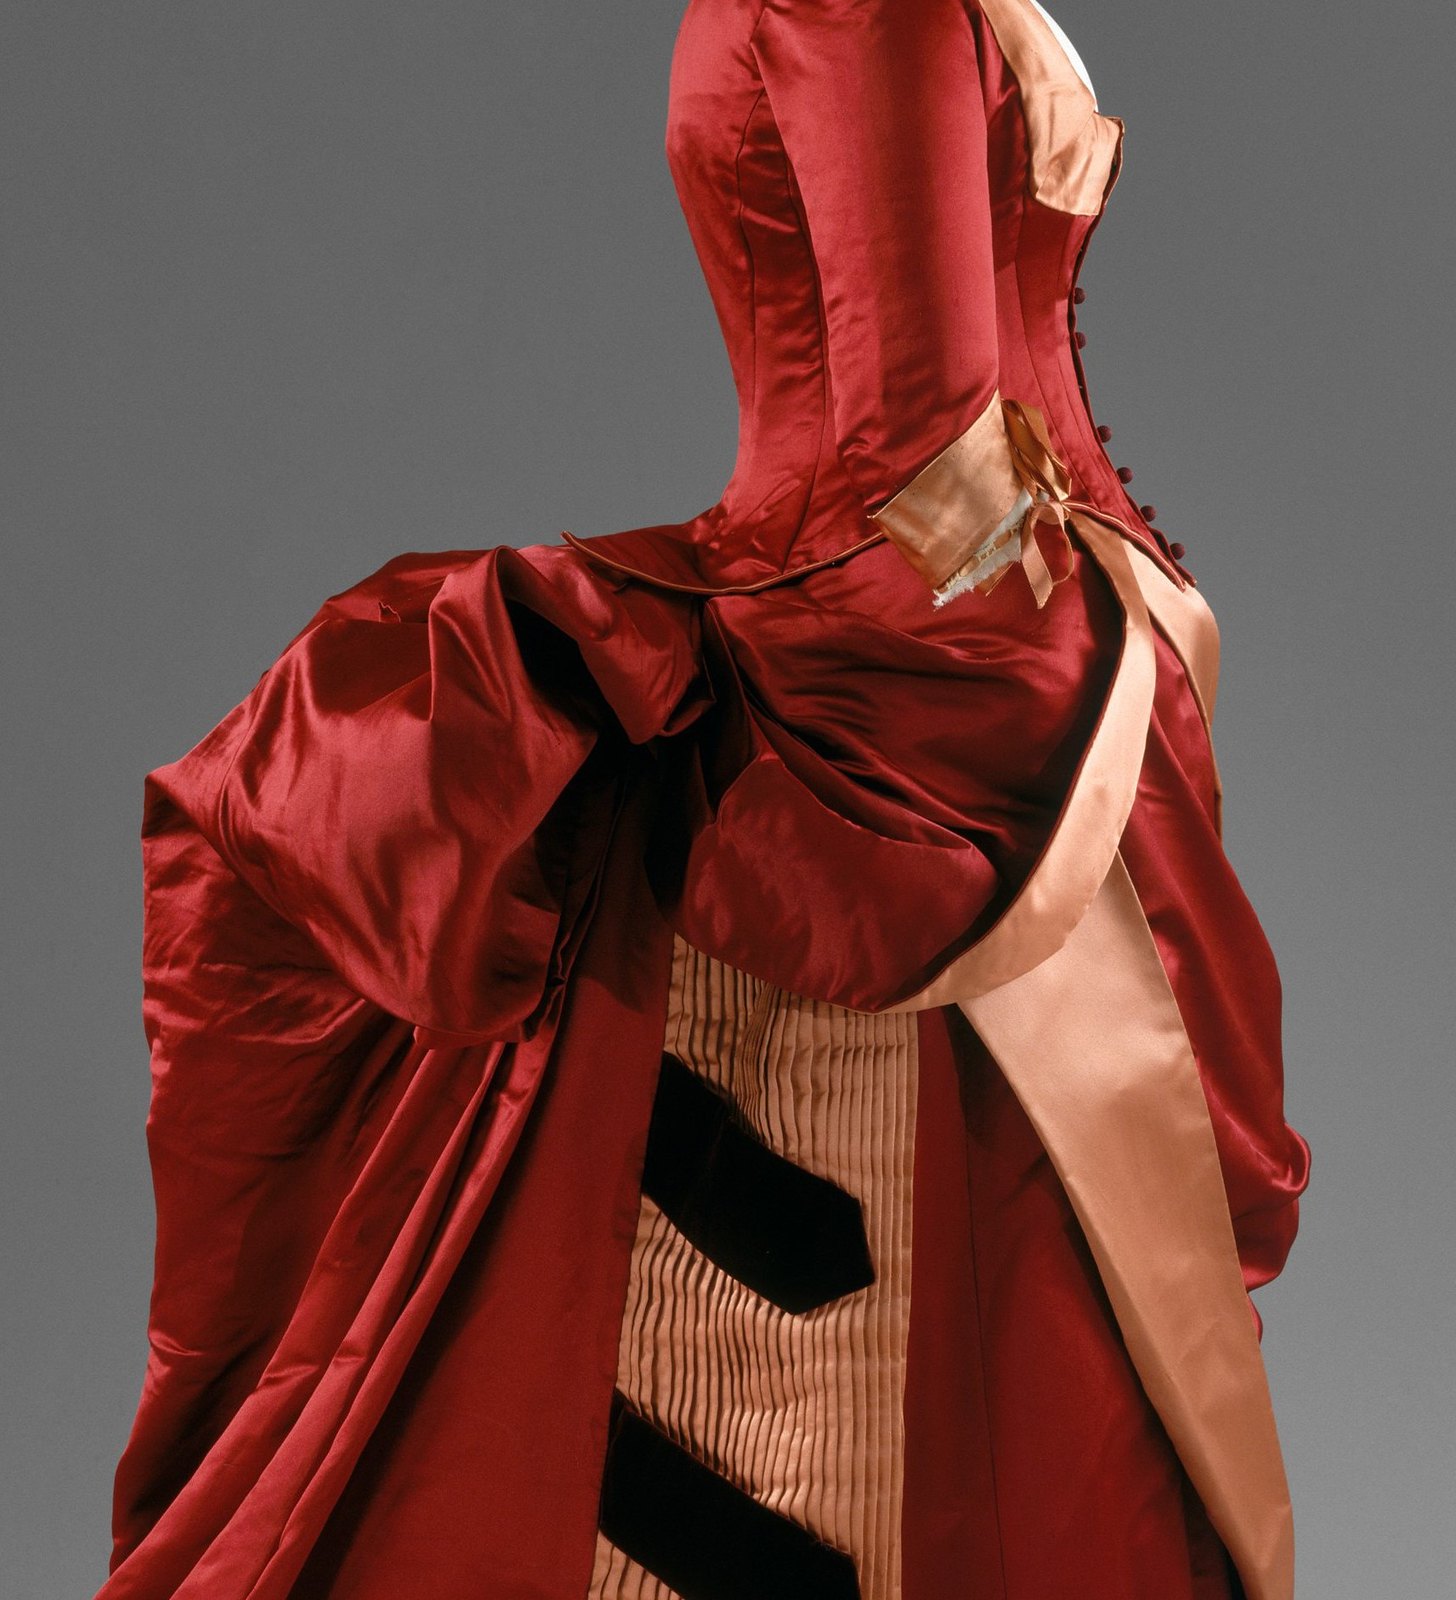 1884-86. American. Silk. metmuseum_closeup